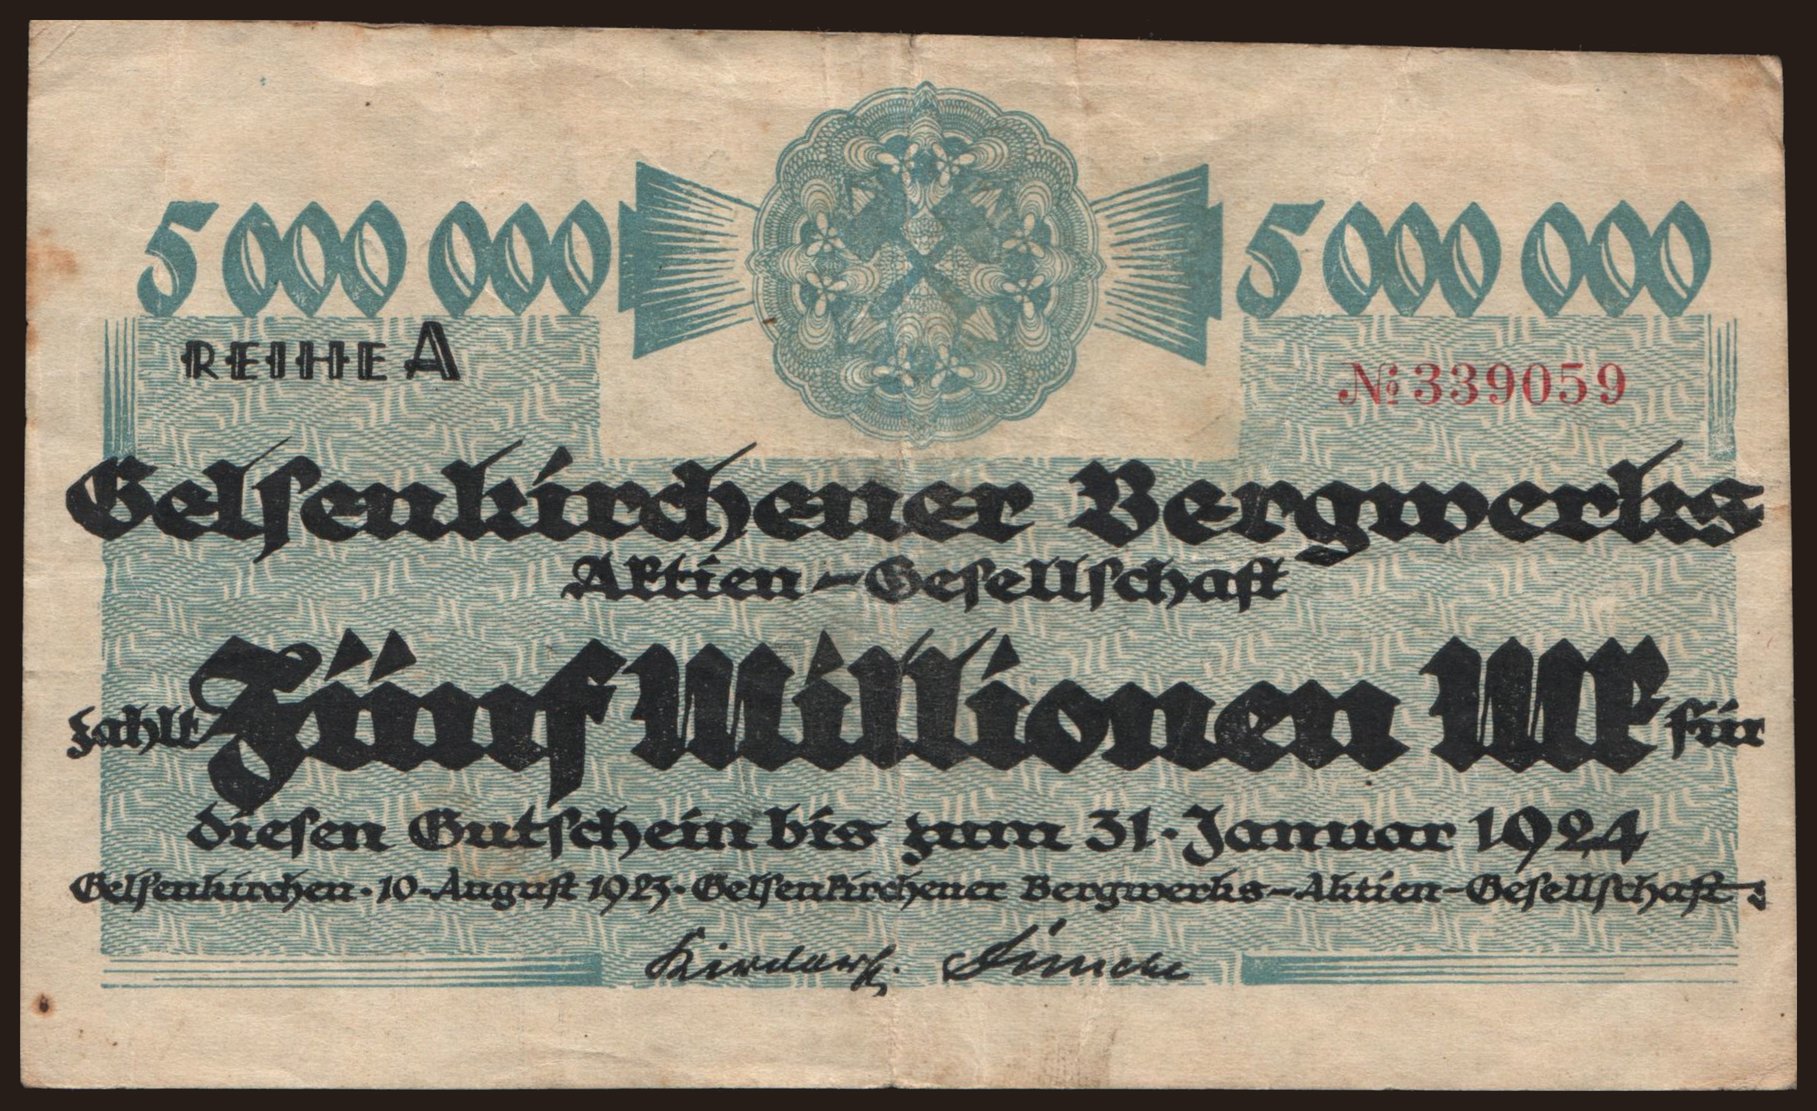 Gelsenkirchen/ Gelsenkirchener Bergwerks A.-G., 5.000.000 Mark, 1923